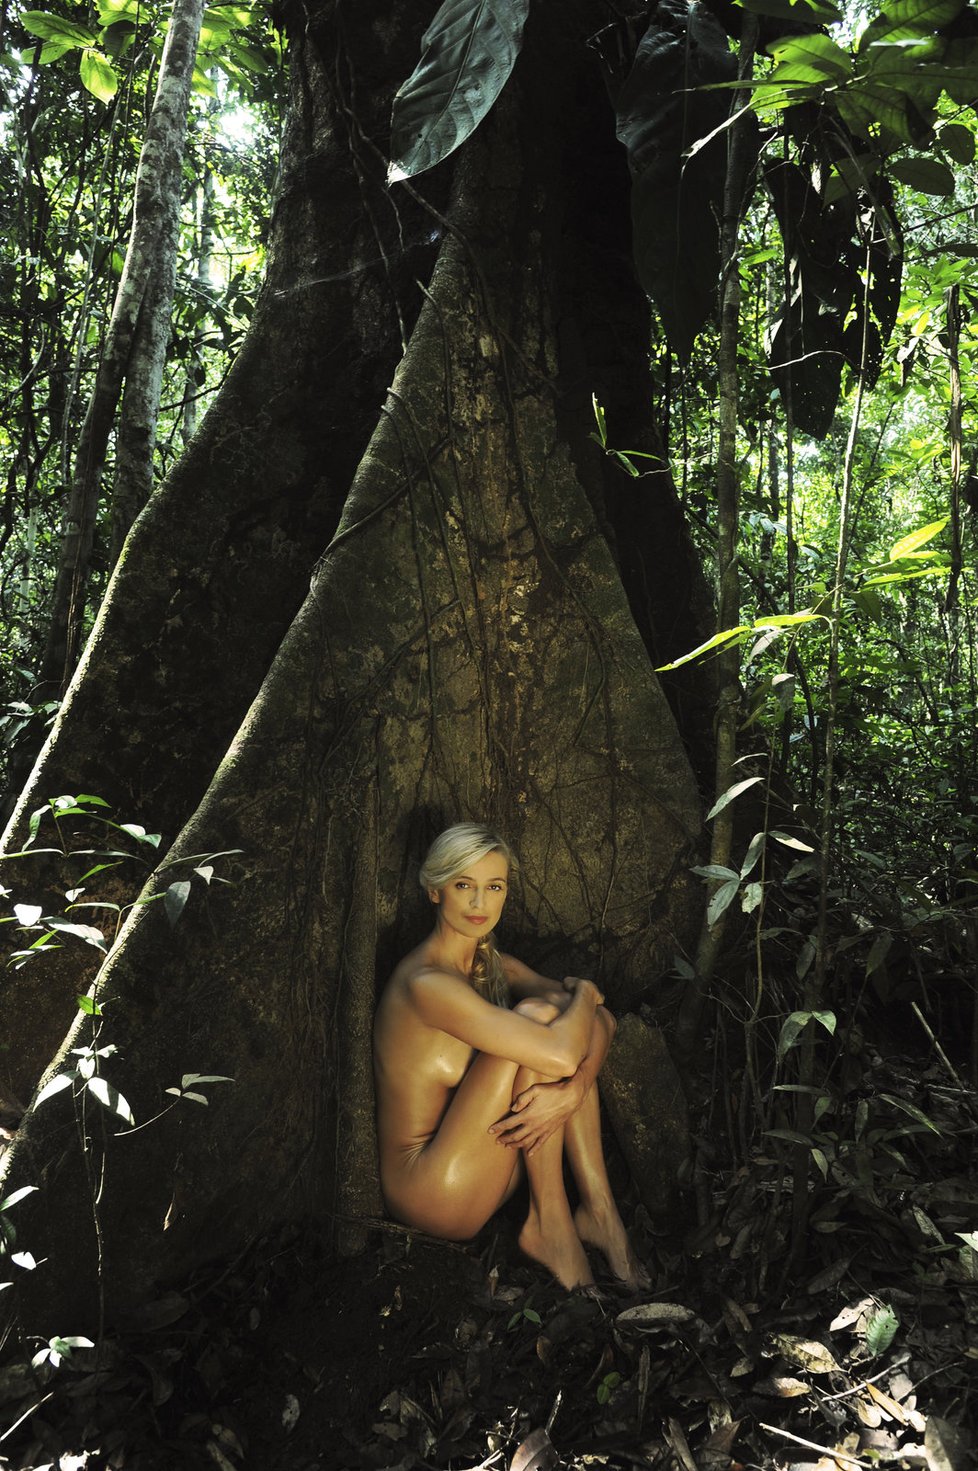 Nahé napospas divoké přírodě! Eliška Bučková a Ivana Jirešová fotily dva týdny v deštném pralese v Amazonii.